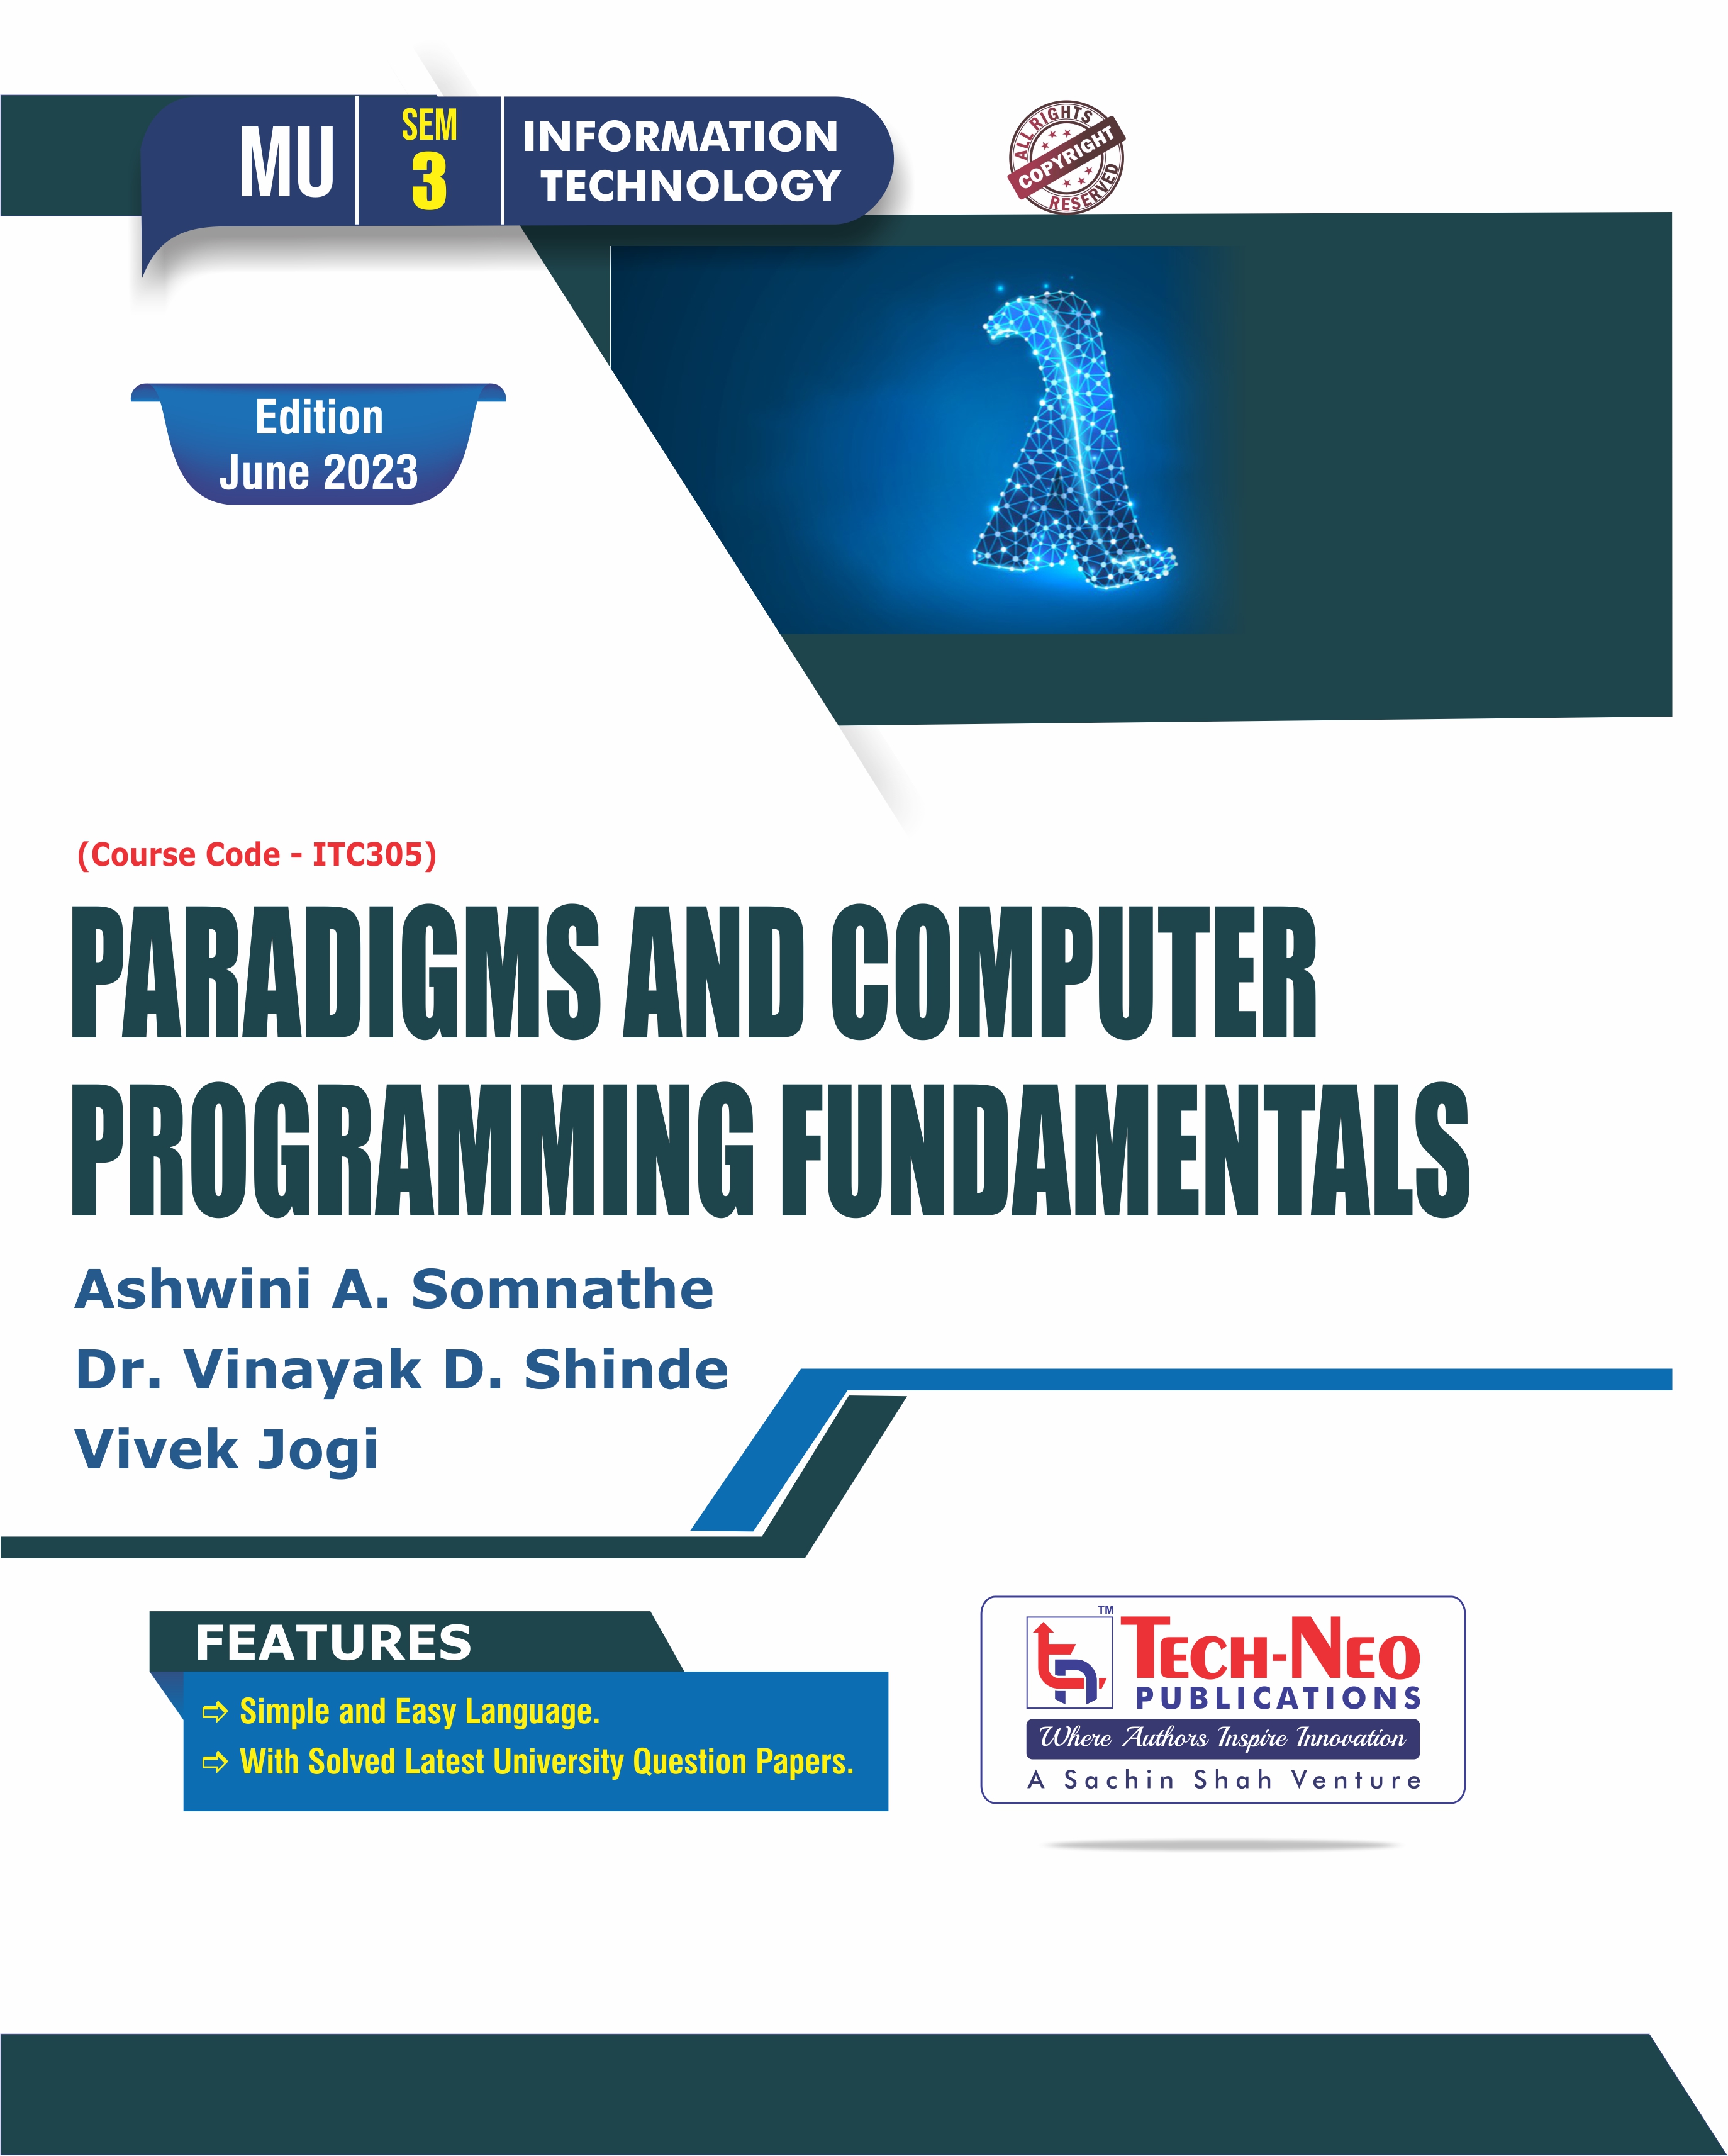 Paradigms and Computer Programming Fundamentals (ITC305)